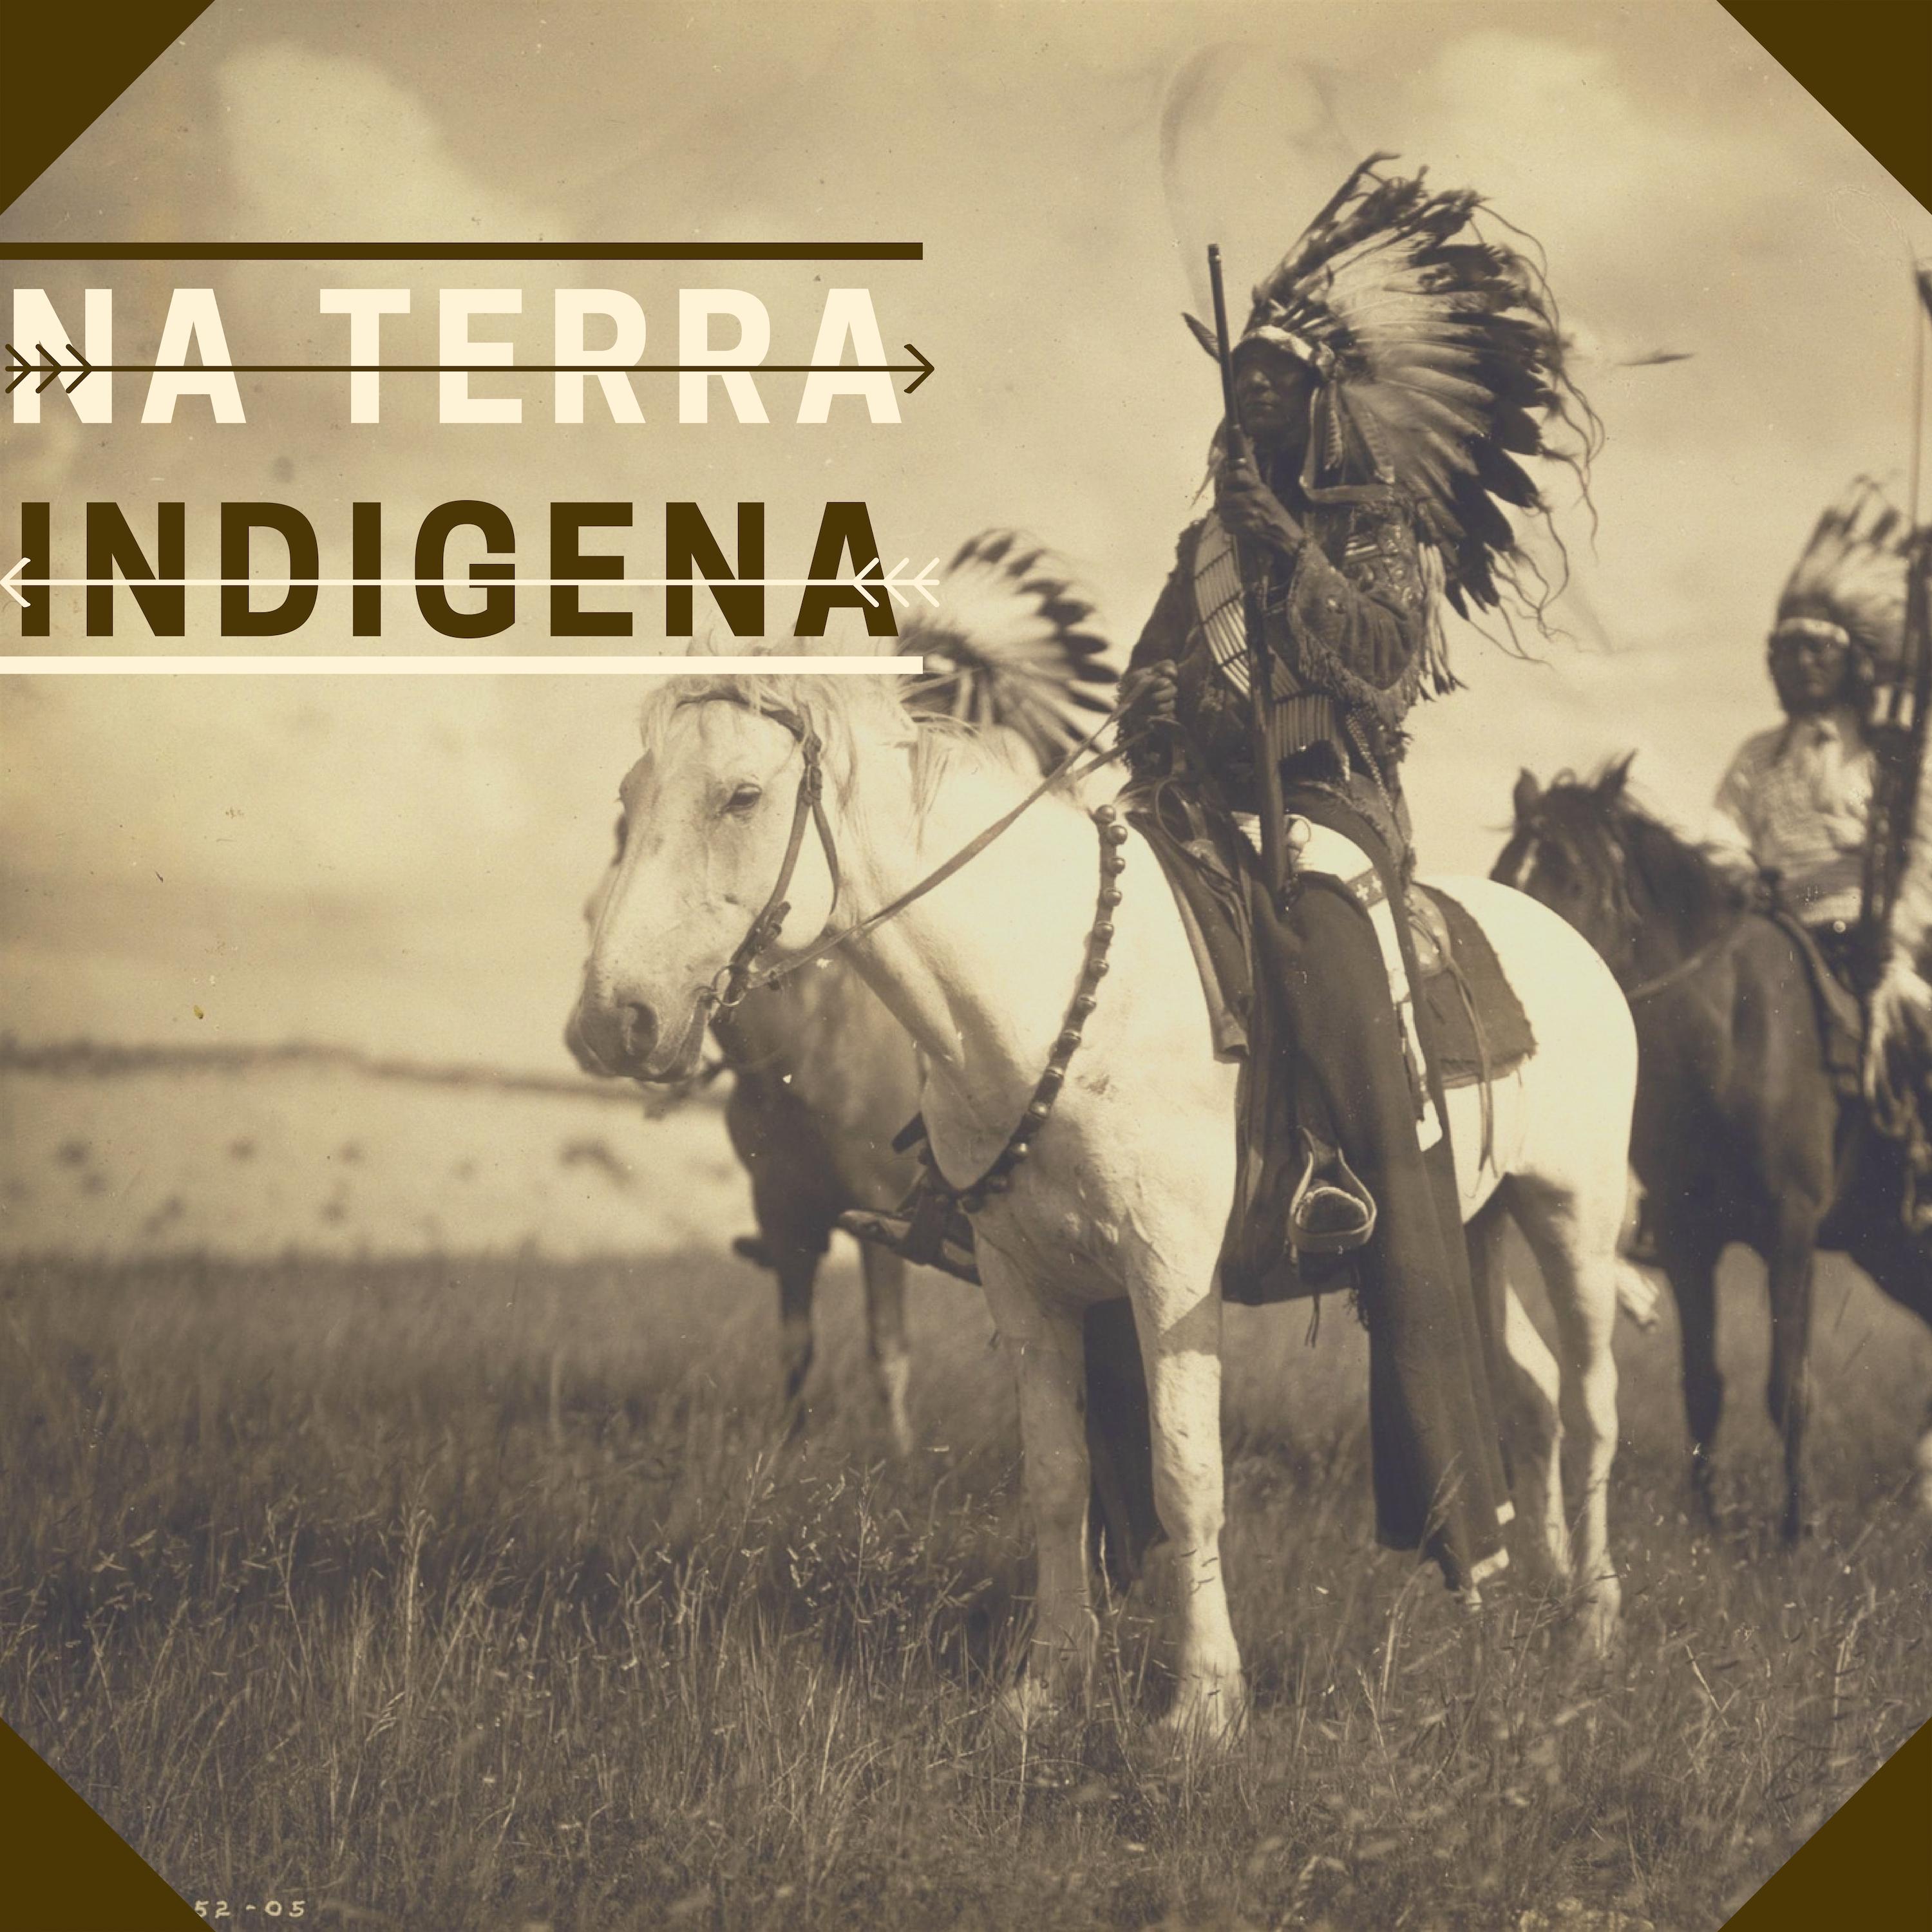 Na Terra Indigena - Música Indios Norte Americanos para Relaxamento e Meditação